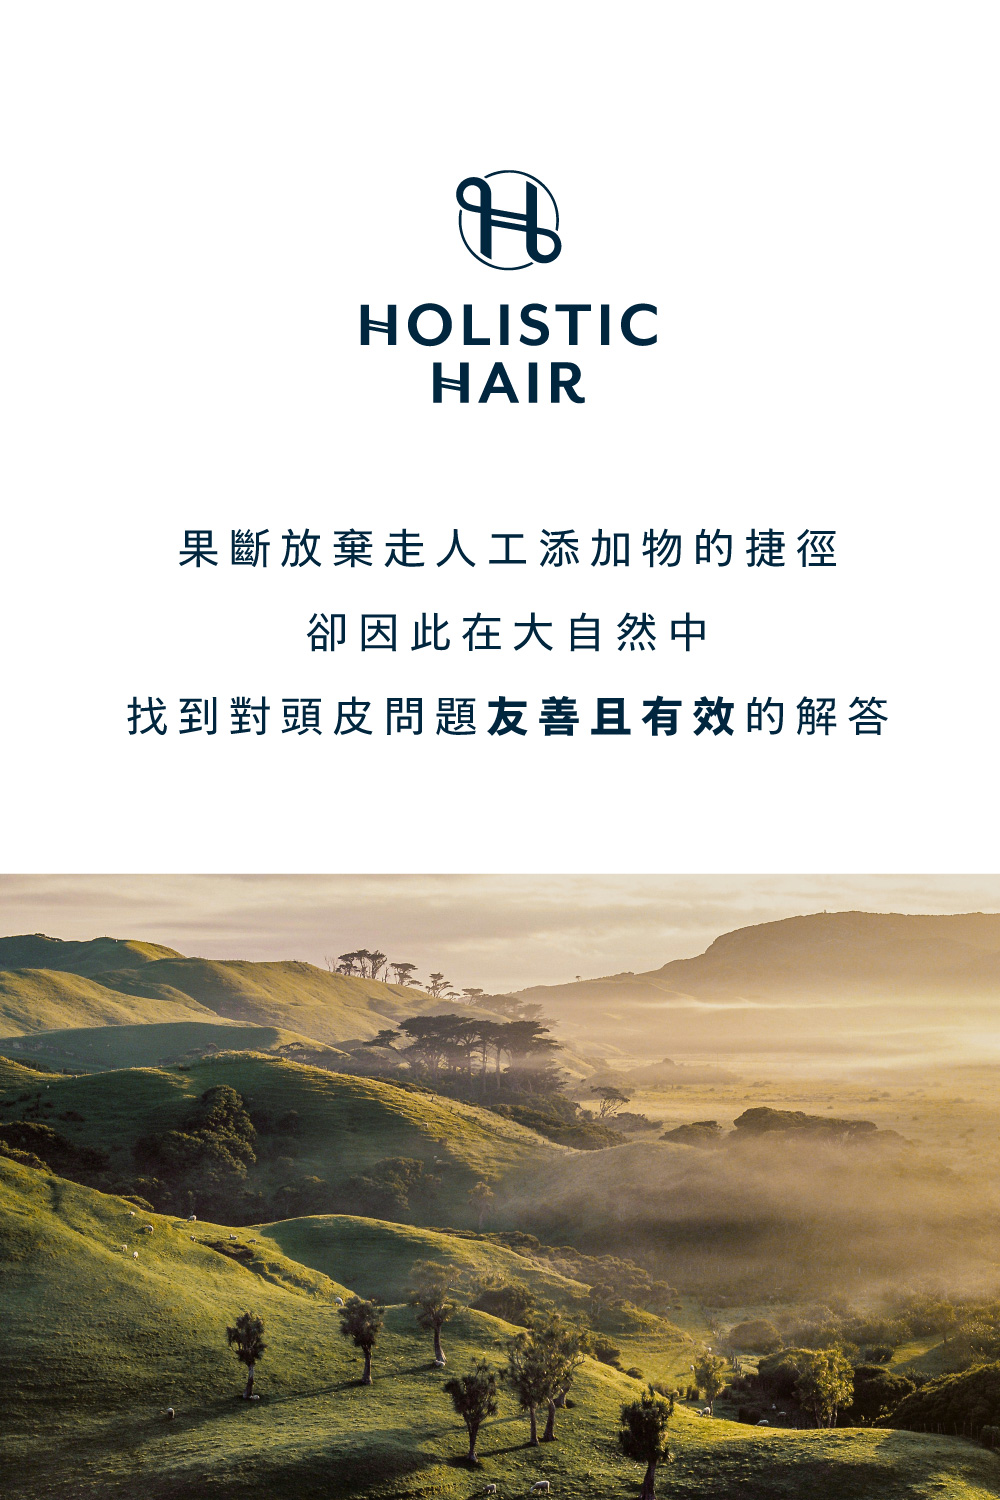 Holistic Hair果斷放棄走人工添加物的捷徑，卻因此在大自然中，找到對頭皮問題友善且有效的解答